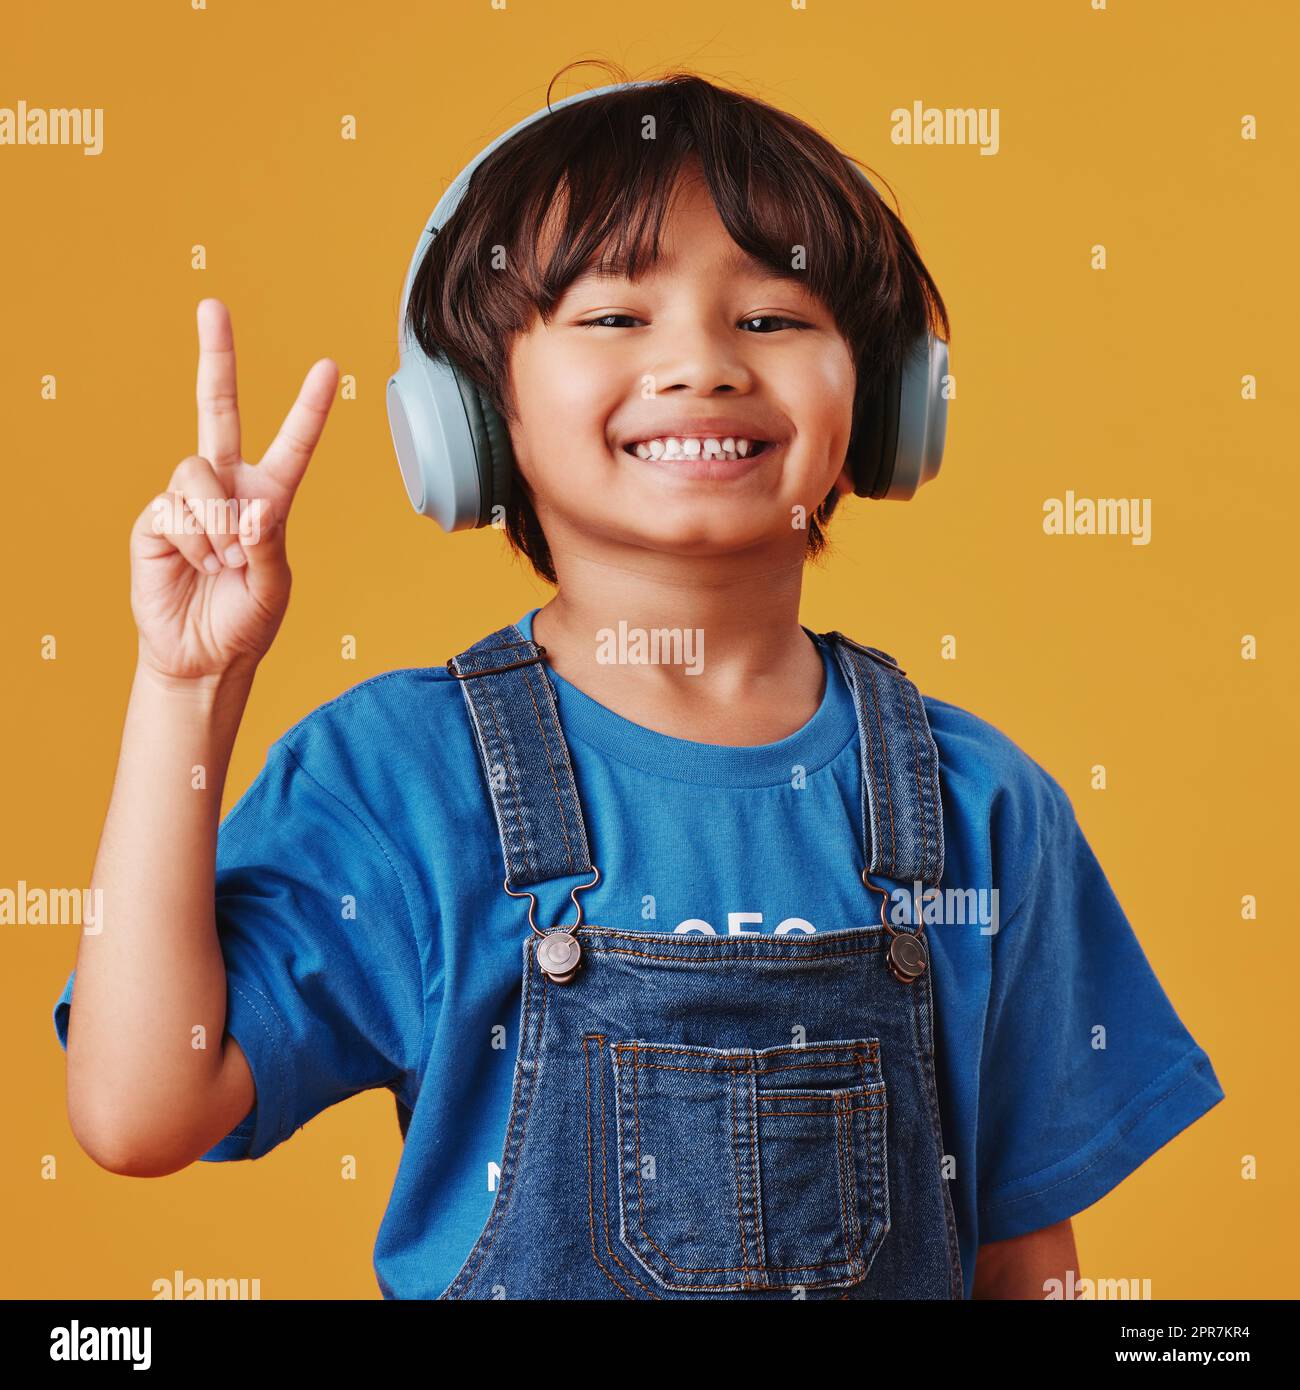 Un adorable petit garçon asiatique qui écoute de la musique tout en portant un casque et fait un geste de paix sur un fond d'espace publicitaire orange. Adorable enfant chinois qui ressent la magie de la musique Banque D'Images